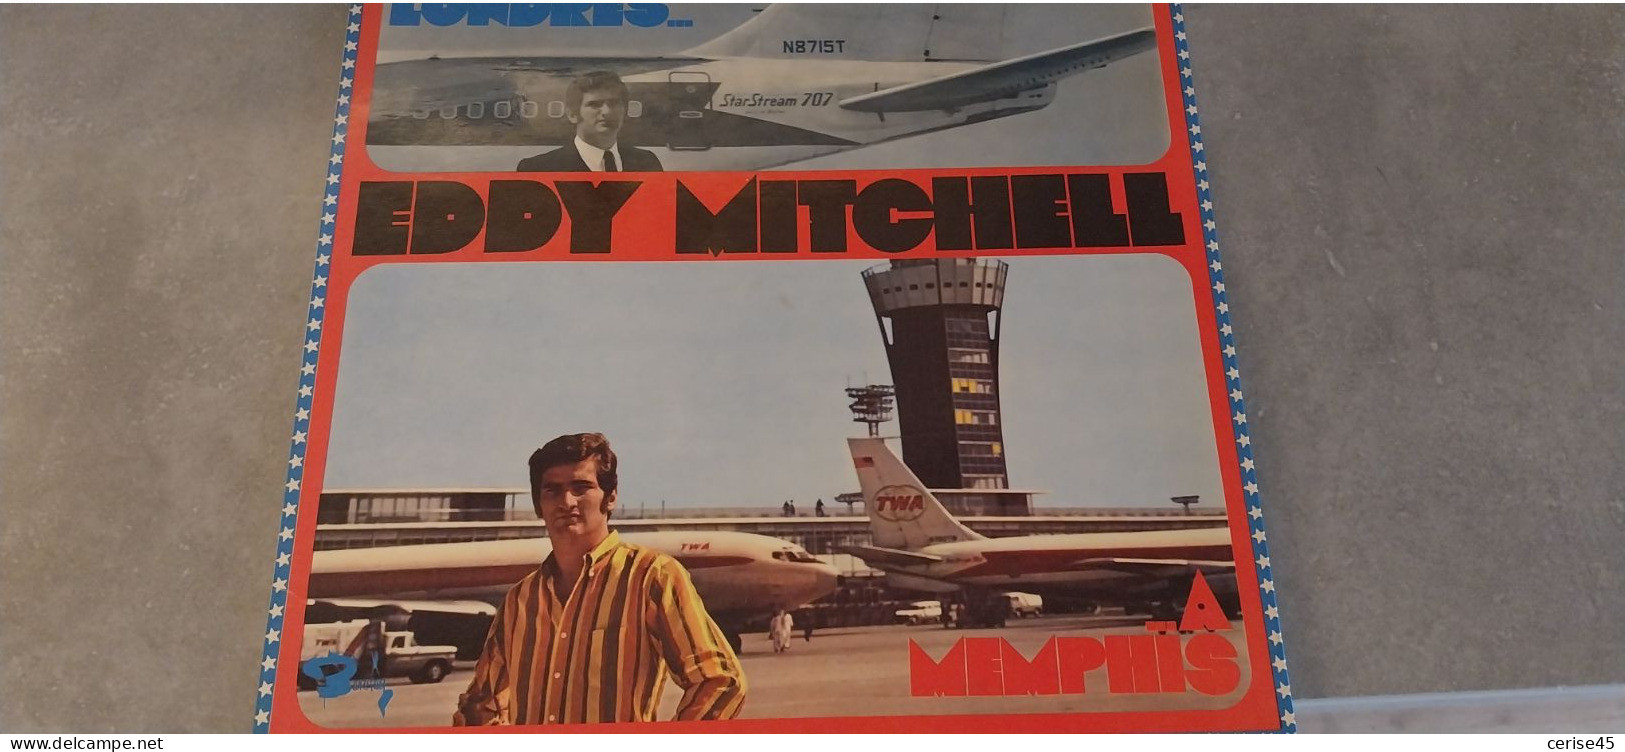 33 TOURS EDDY MITCHELL DE LONDRES A MENPHIS  ENREGISTRE EN 1967 - Autres - Musique Française